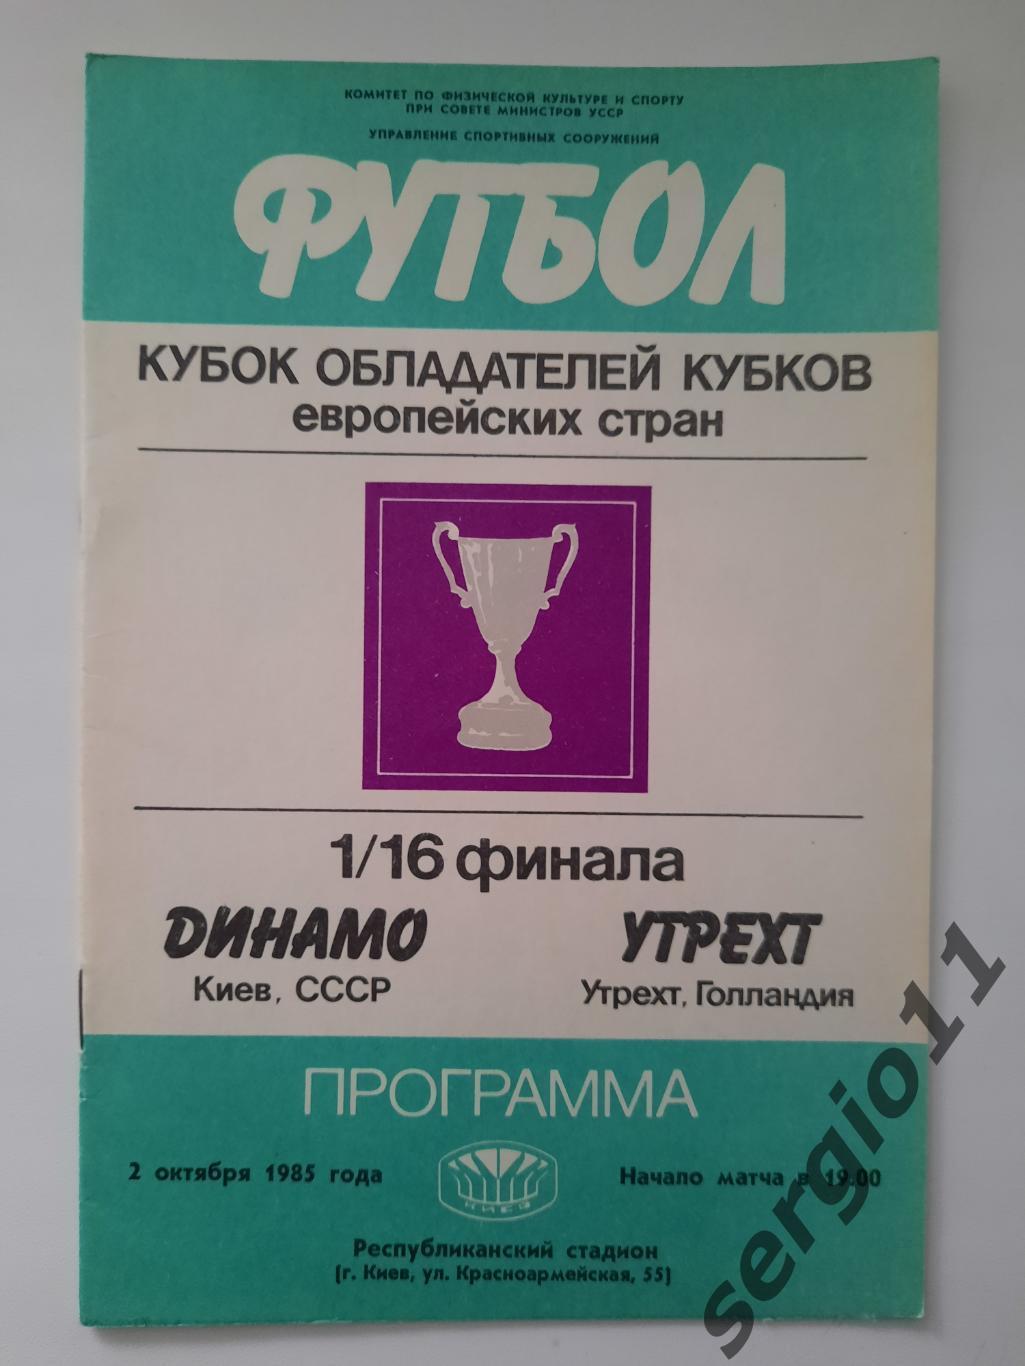 Динамо Киев - Утрехт Голландия 02.10.1985 г. 1/16 финала Кубка Кубков